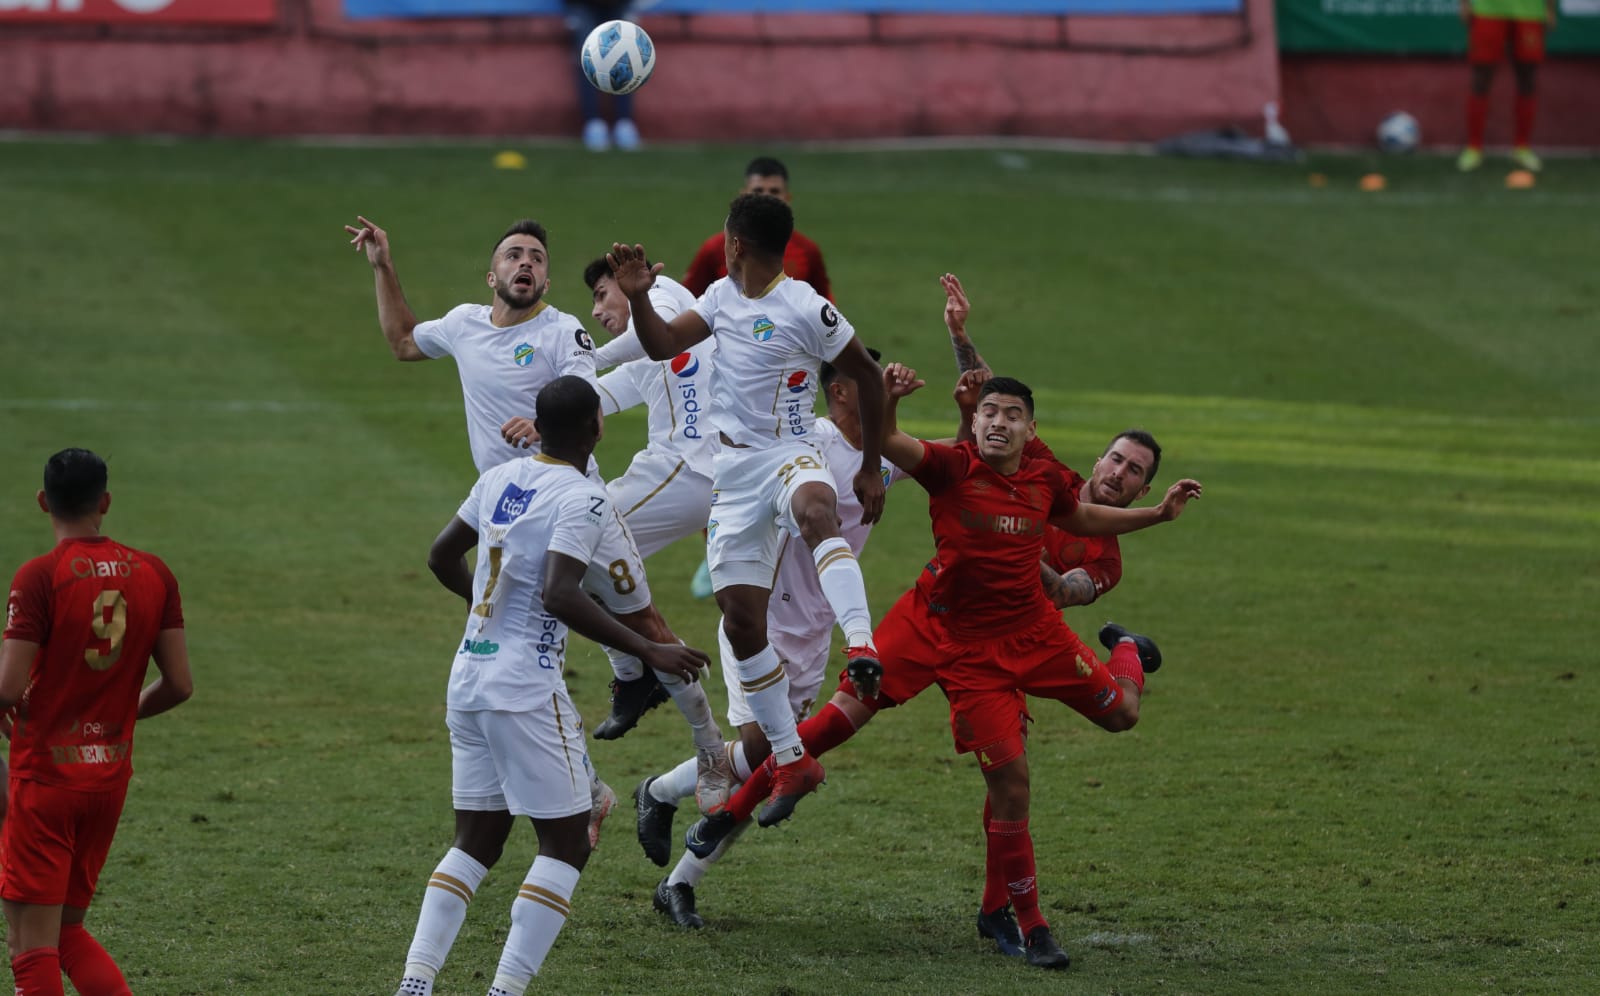 Los jugadores de Comunicaciones disputan el balón a futbolistas de Municipal. (Foto Prensa Libre: Esbin García)